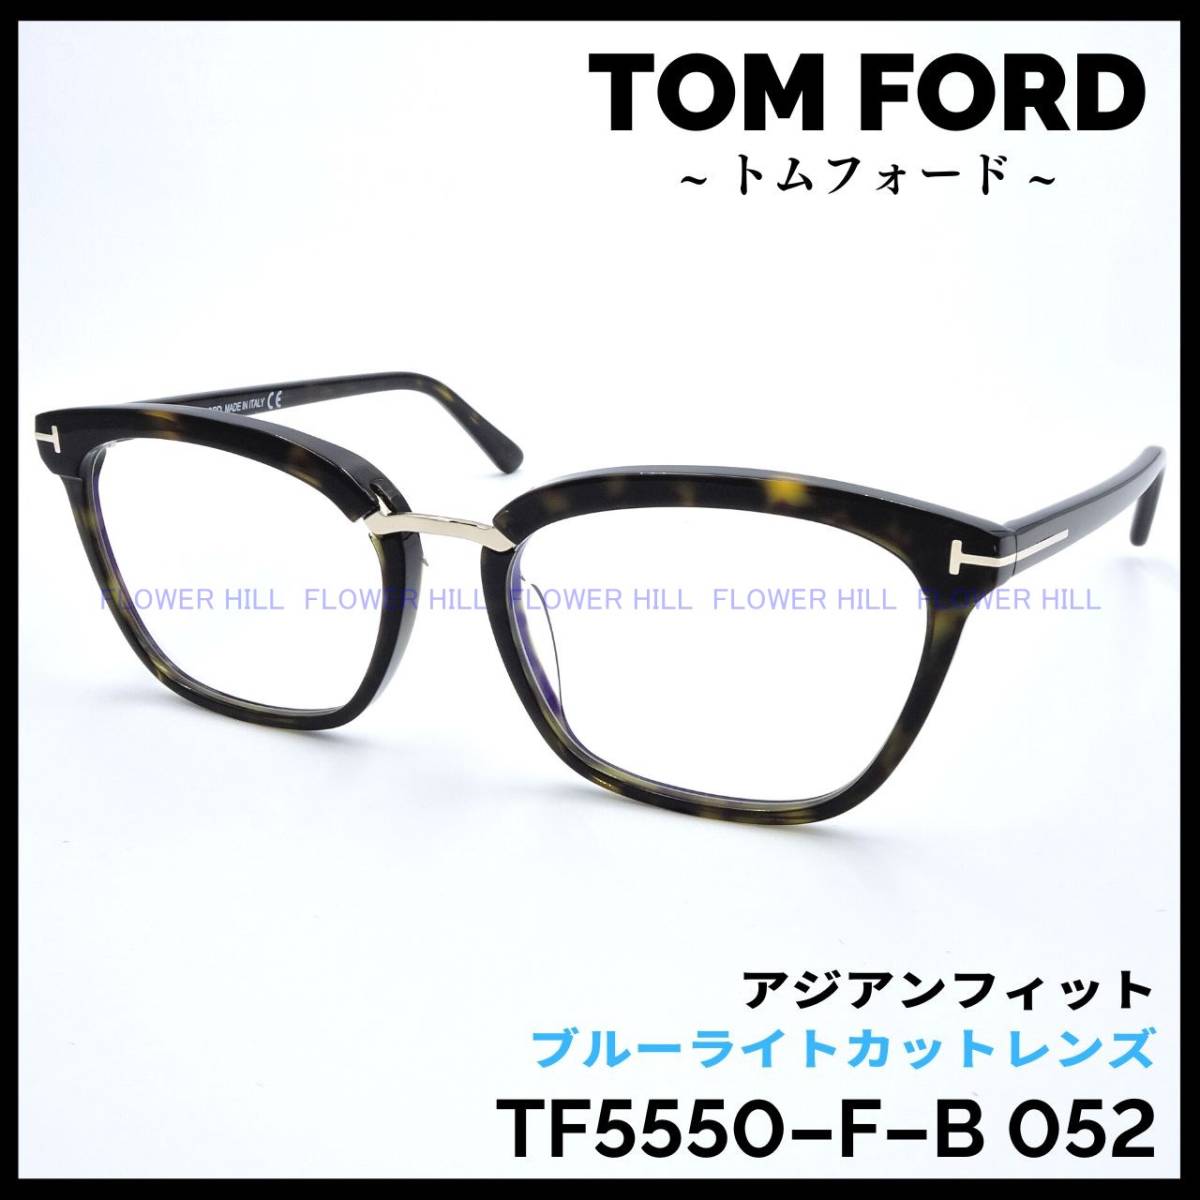 新品・送料無料】トムフォード TOM FORD TF5550-F-B 052 メガネ